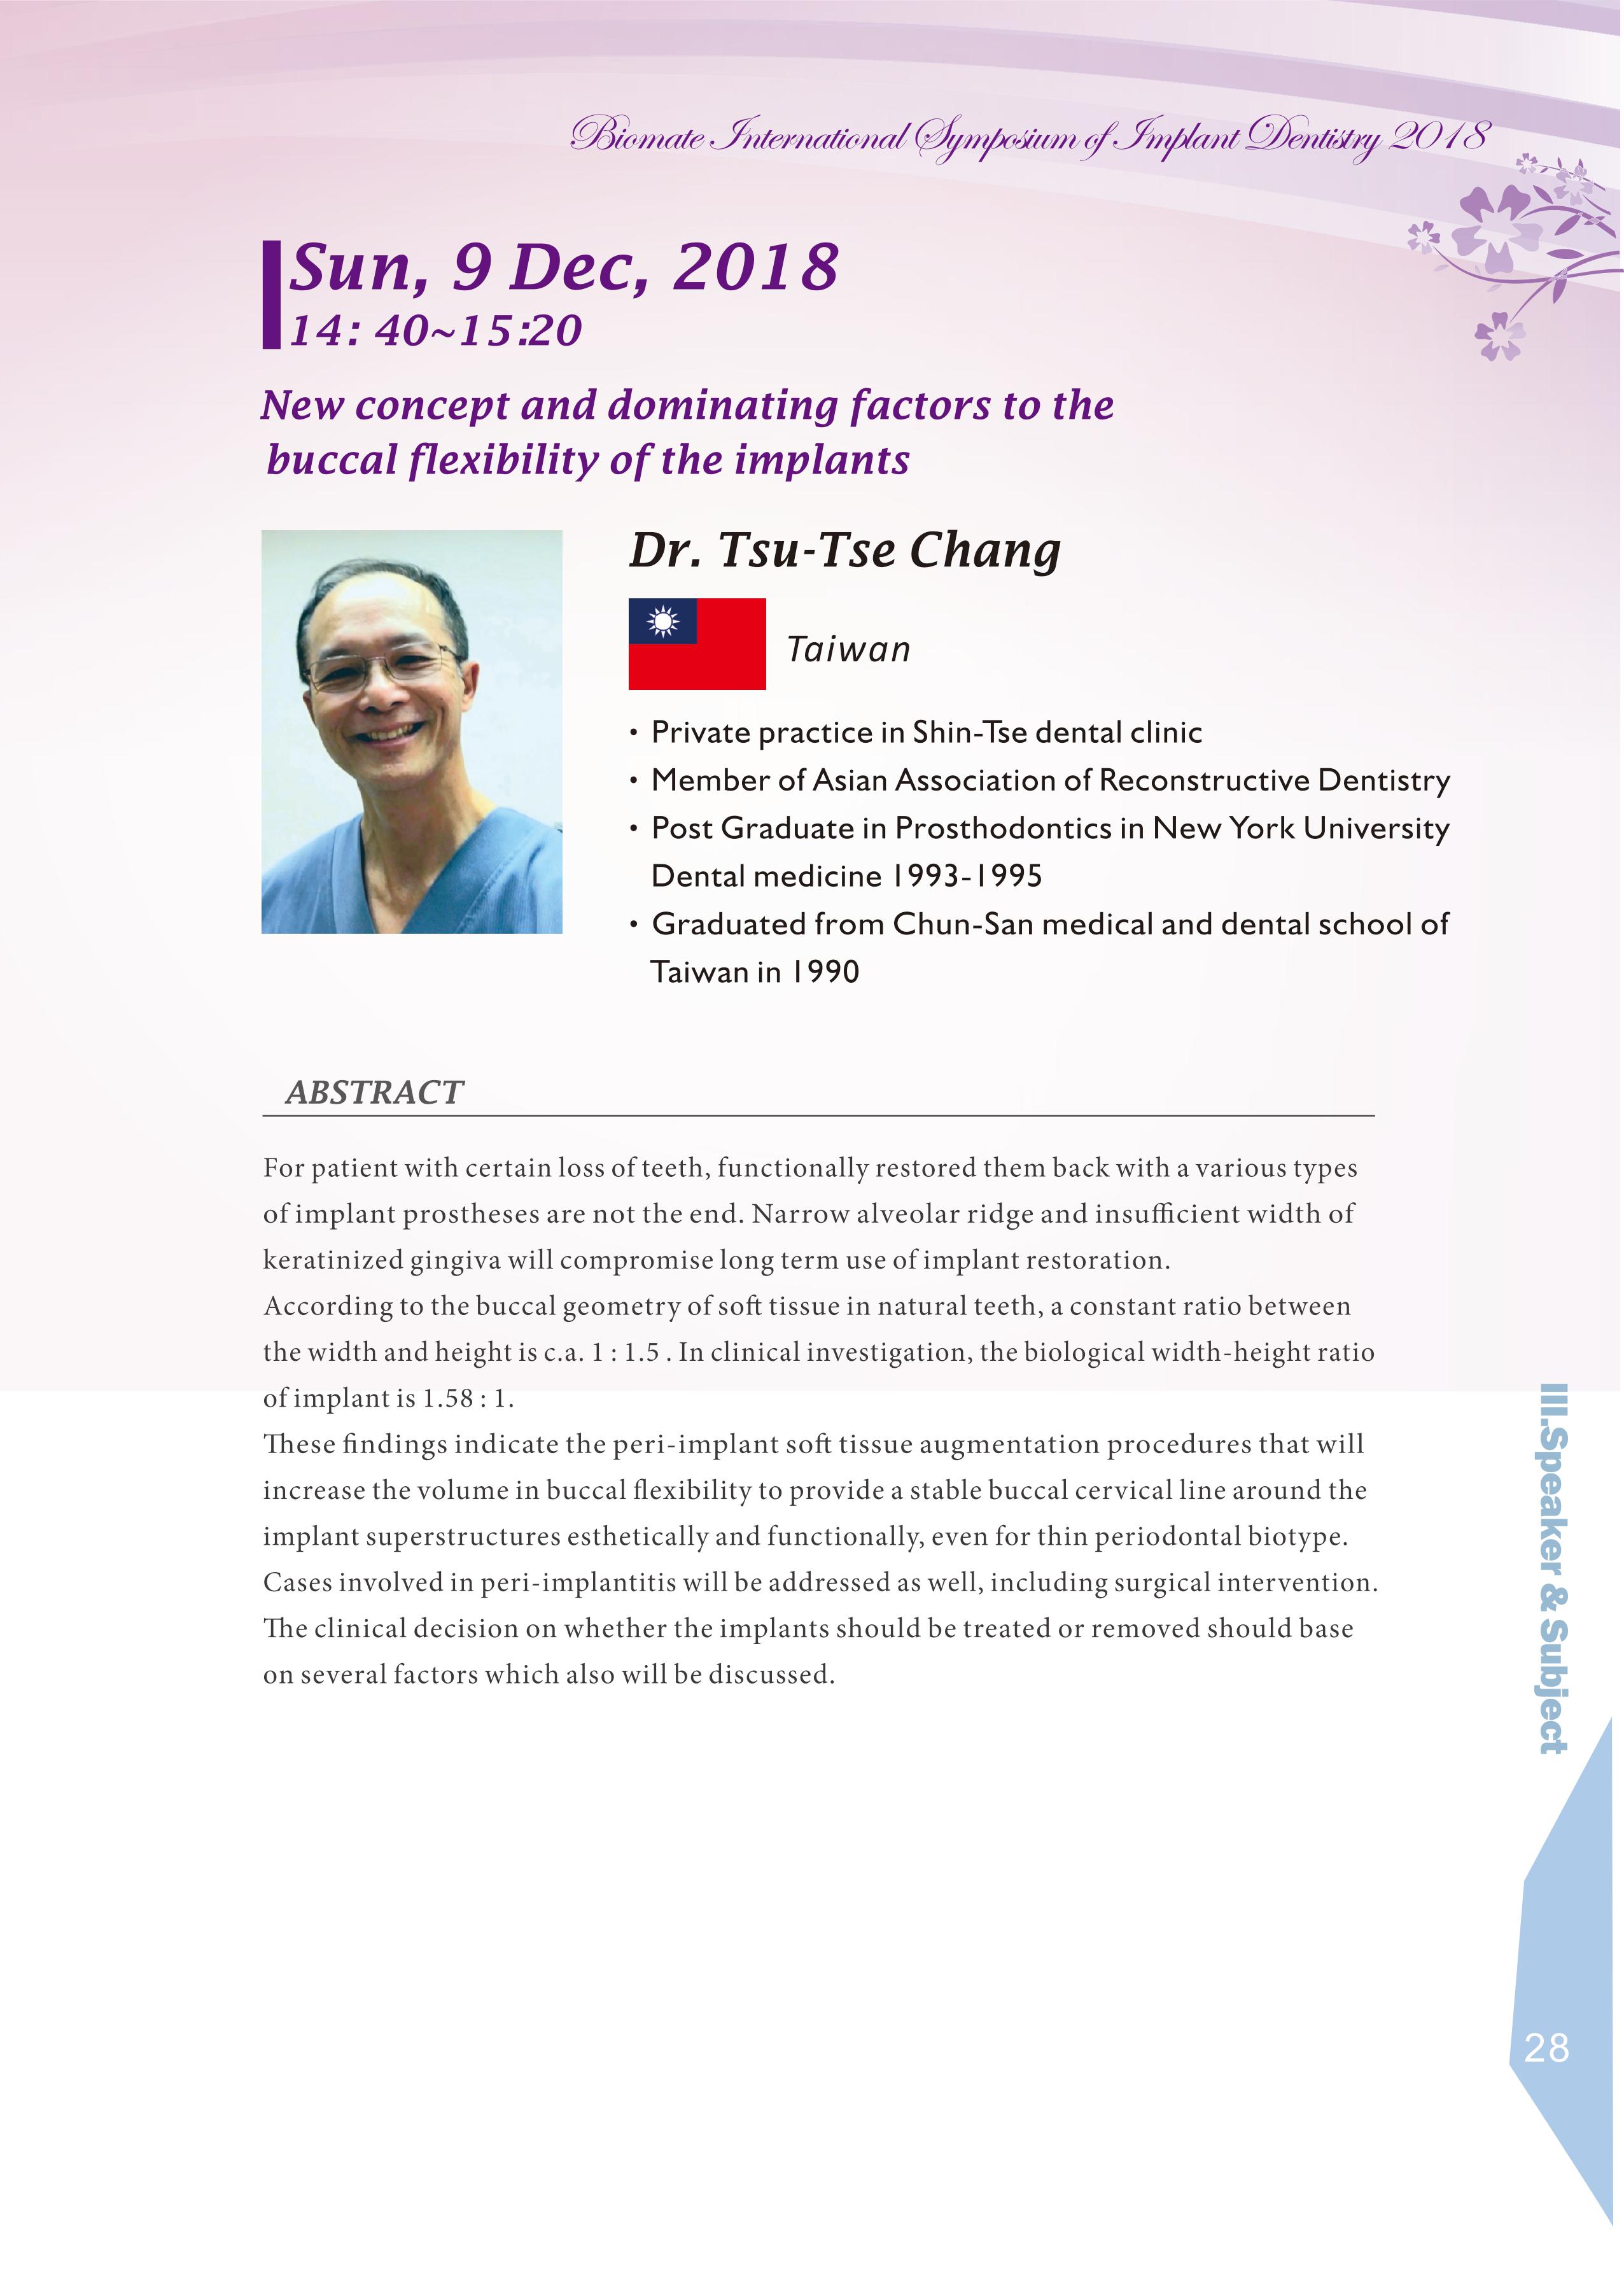 Biomate Internation Symposium of Implant Dentistry-Dr.Tsu-Tse Chang